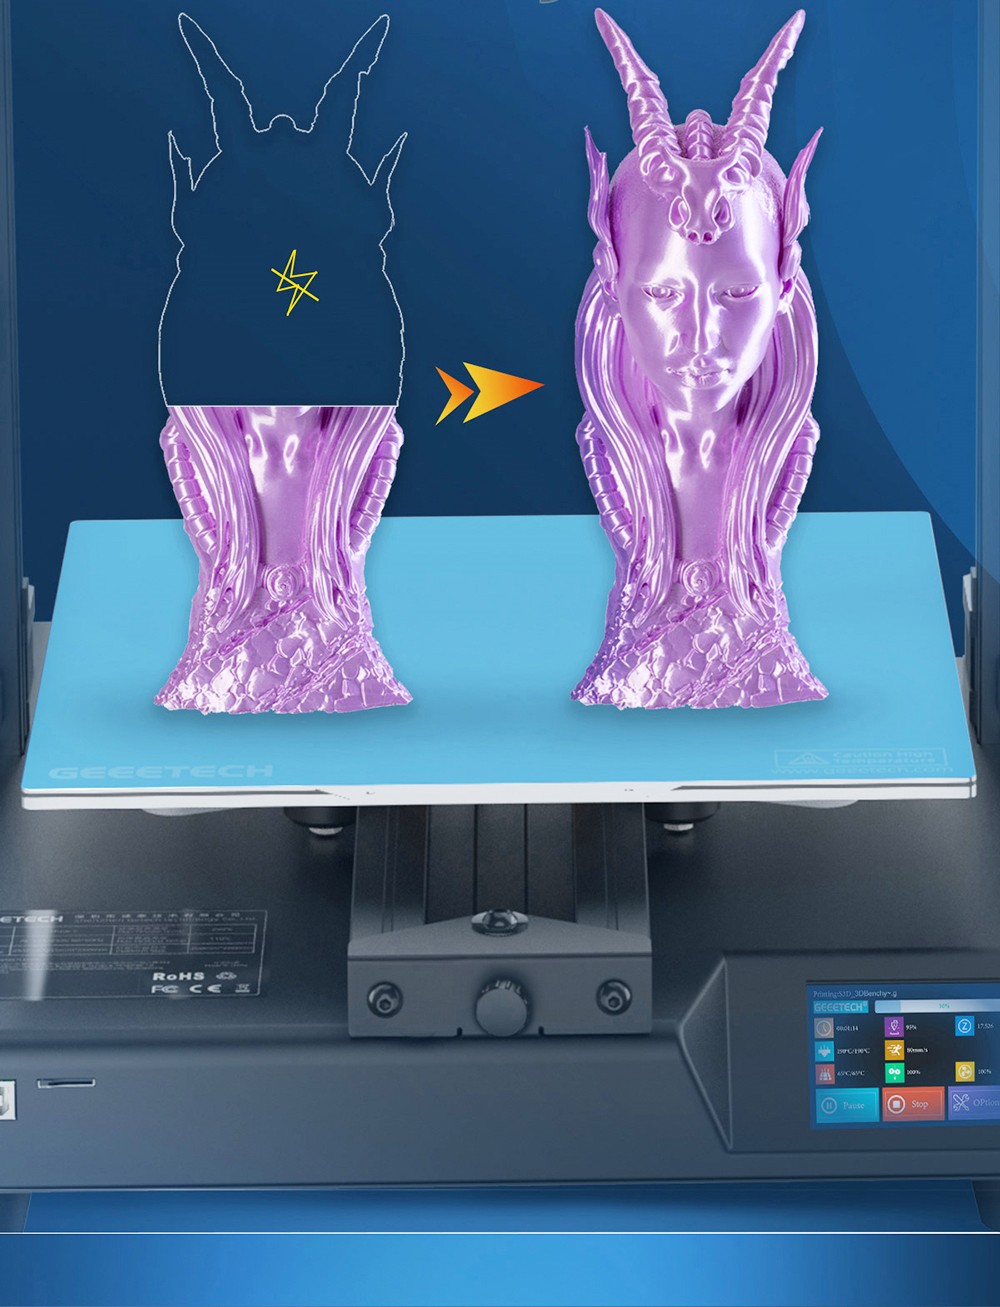 Impresora 3D Geeetech Mizar S